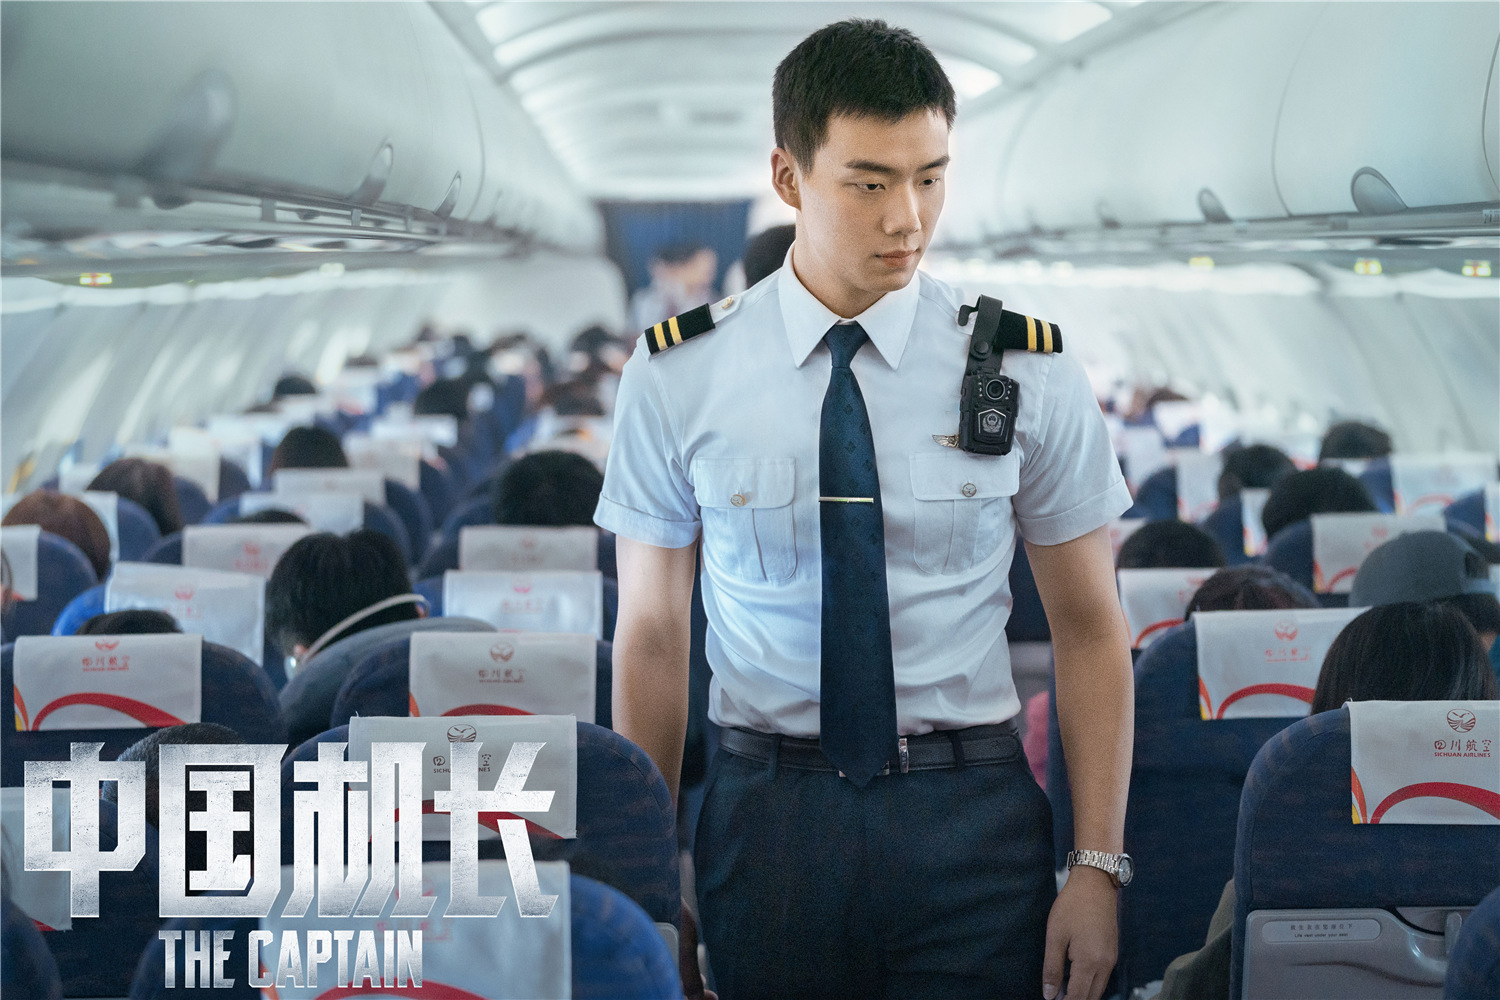 《中国机长》发"英雄机组来了"特辑 英雄机长刘传健现身"安利"